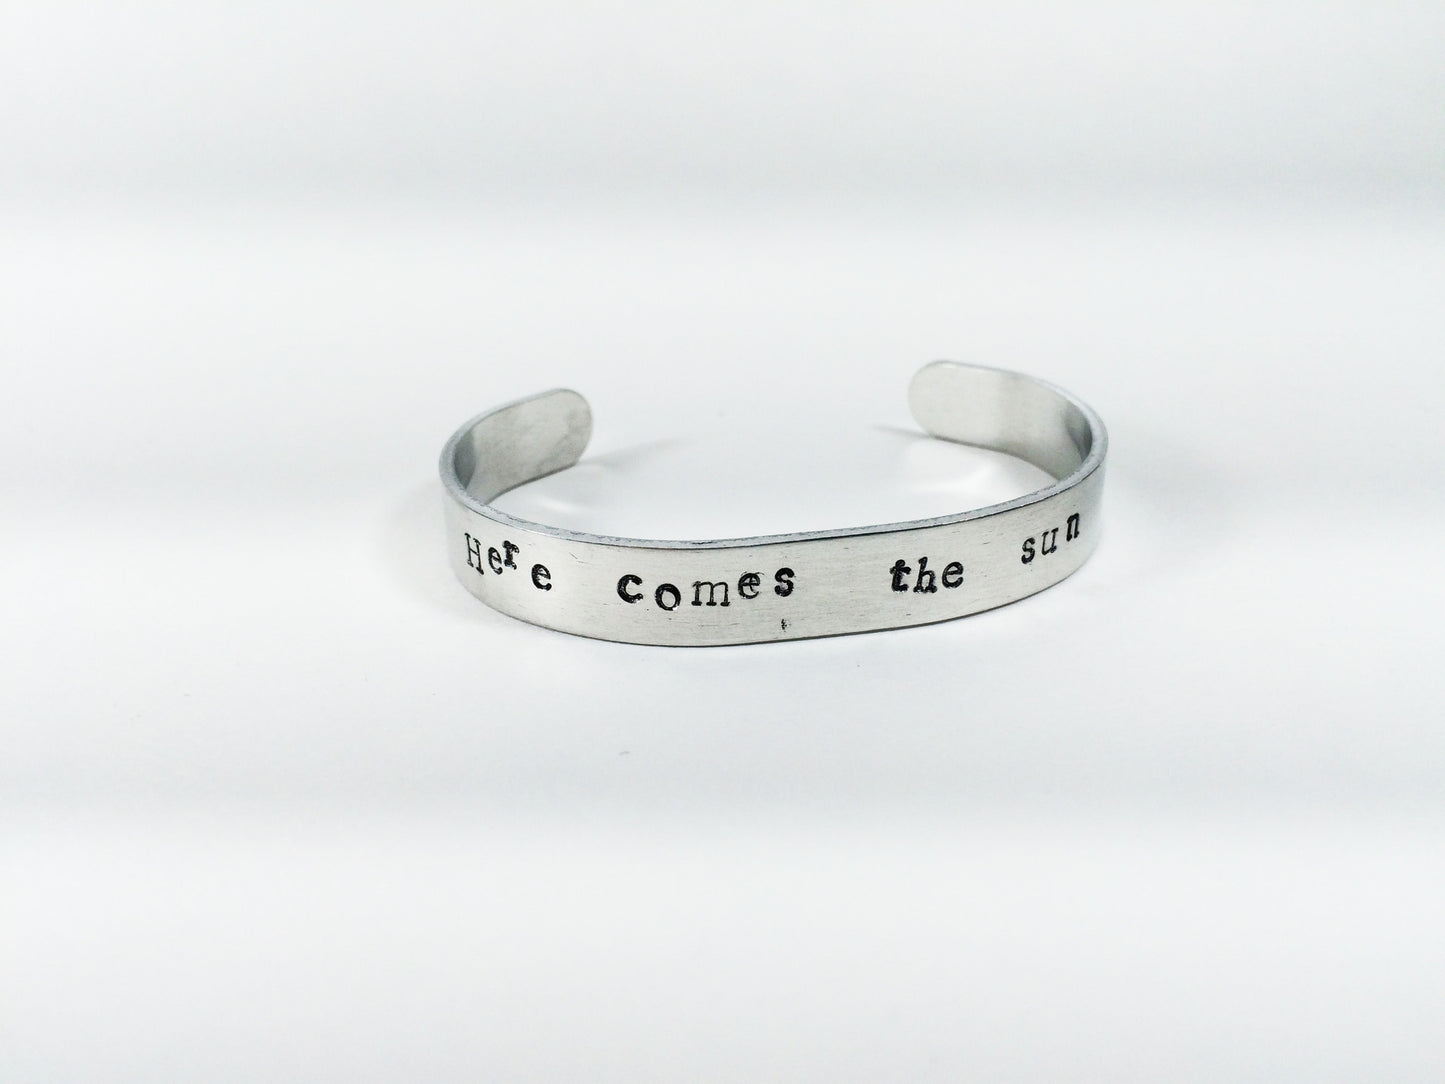 "Here comes the sun" handmade aluminum bracelet